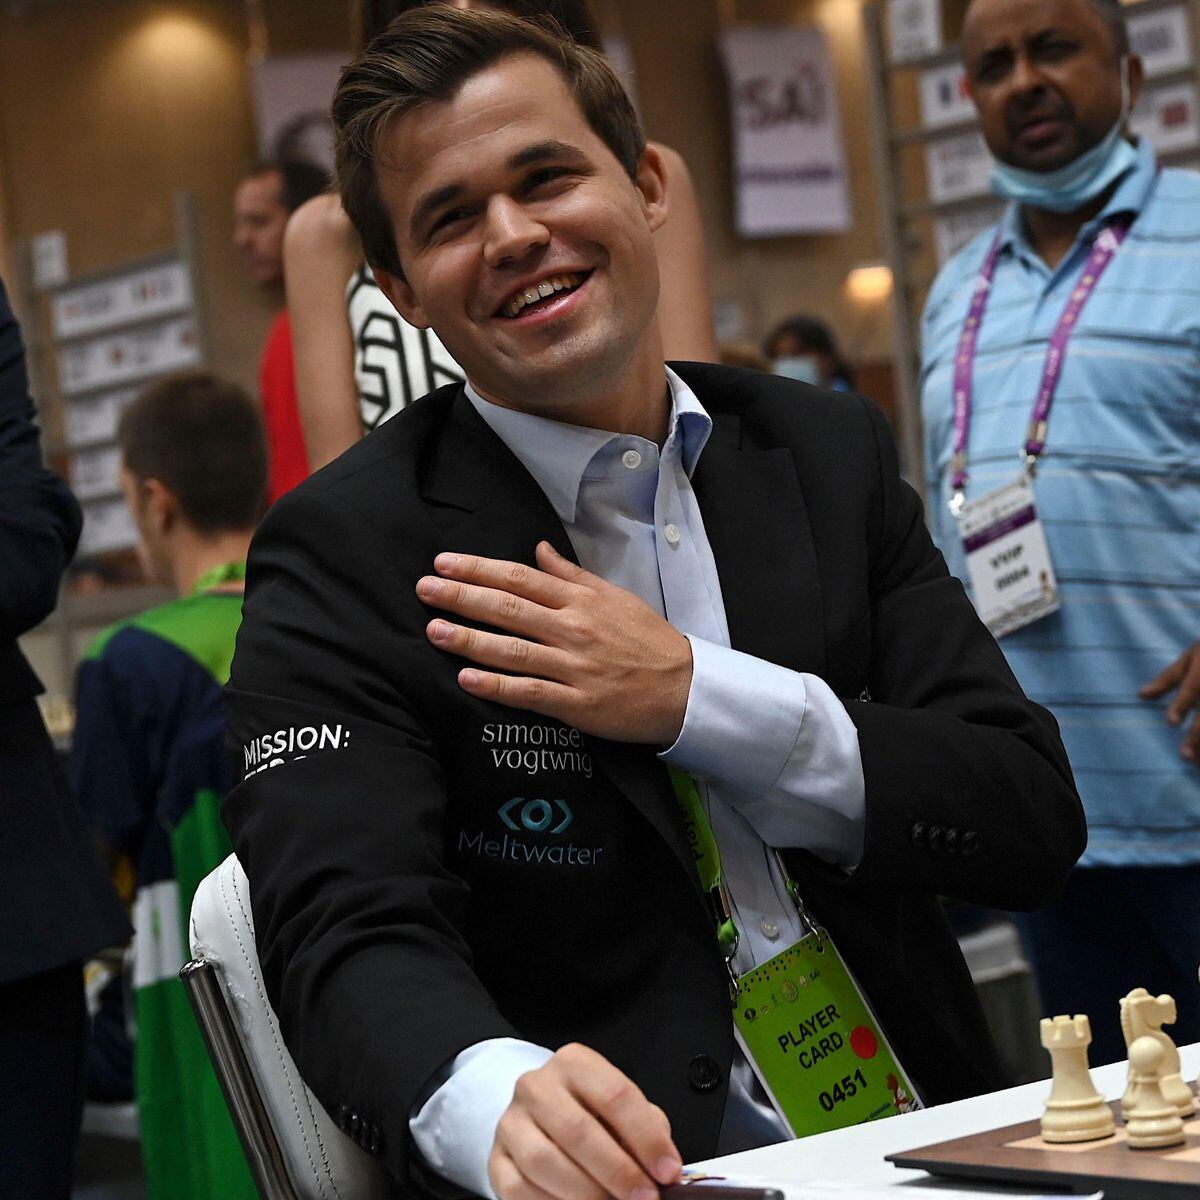 Lenda do xadrez, Magnus Carlsen acerta hero call com último par